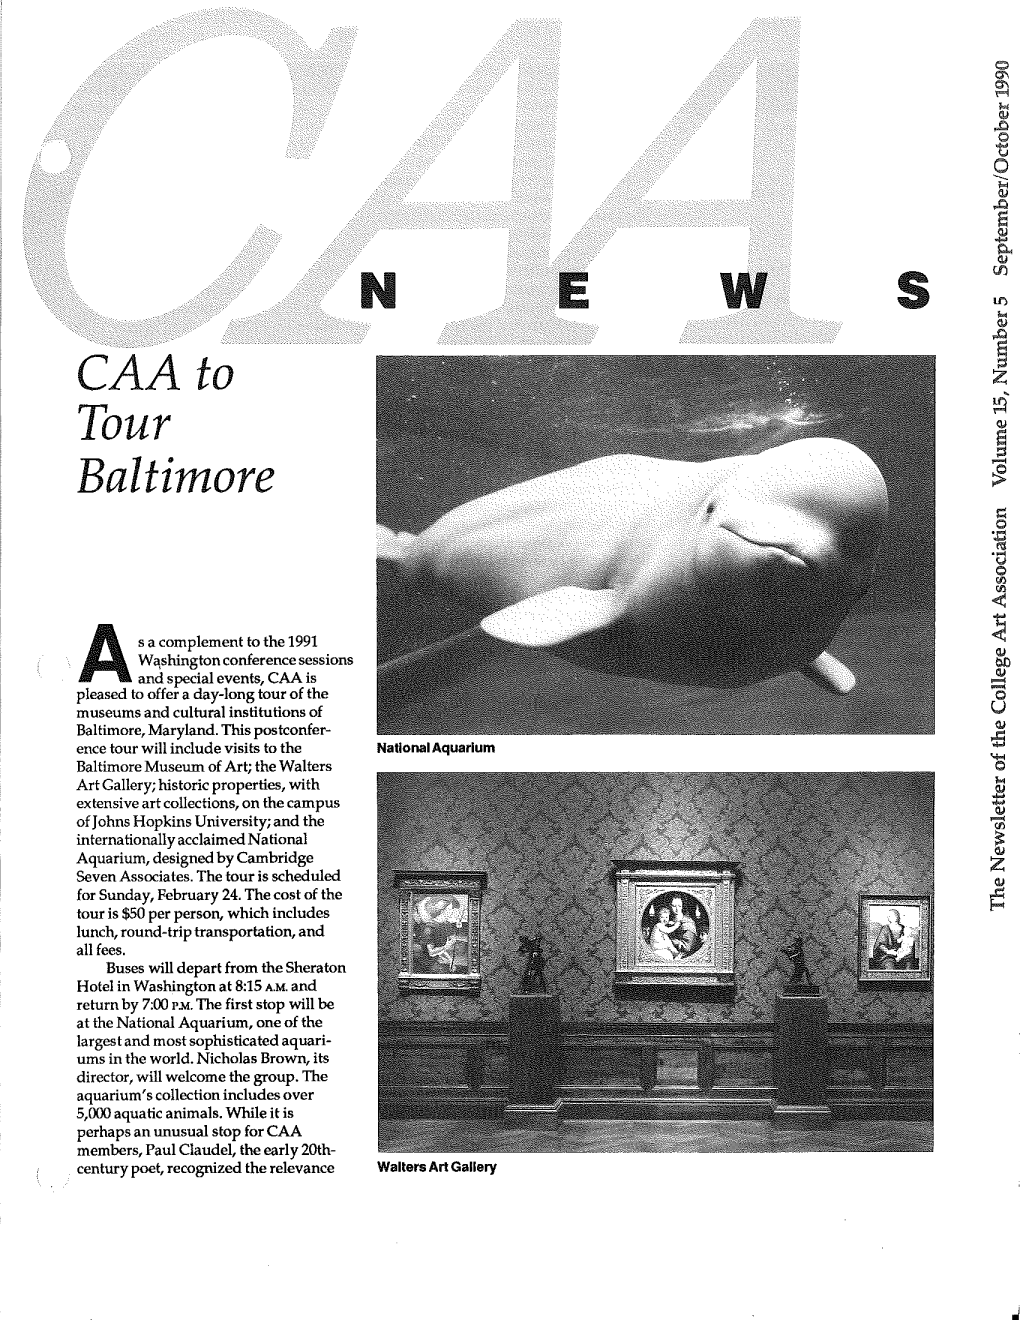 September-October 1990 CAA News